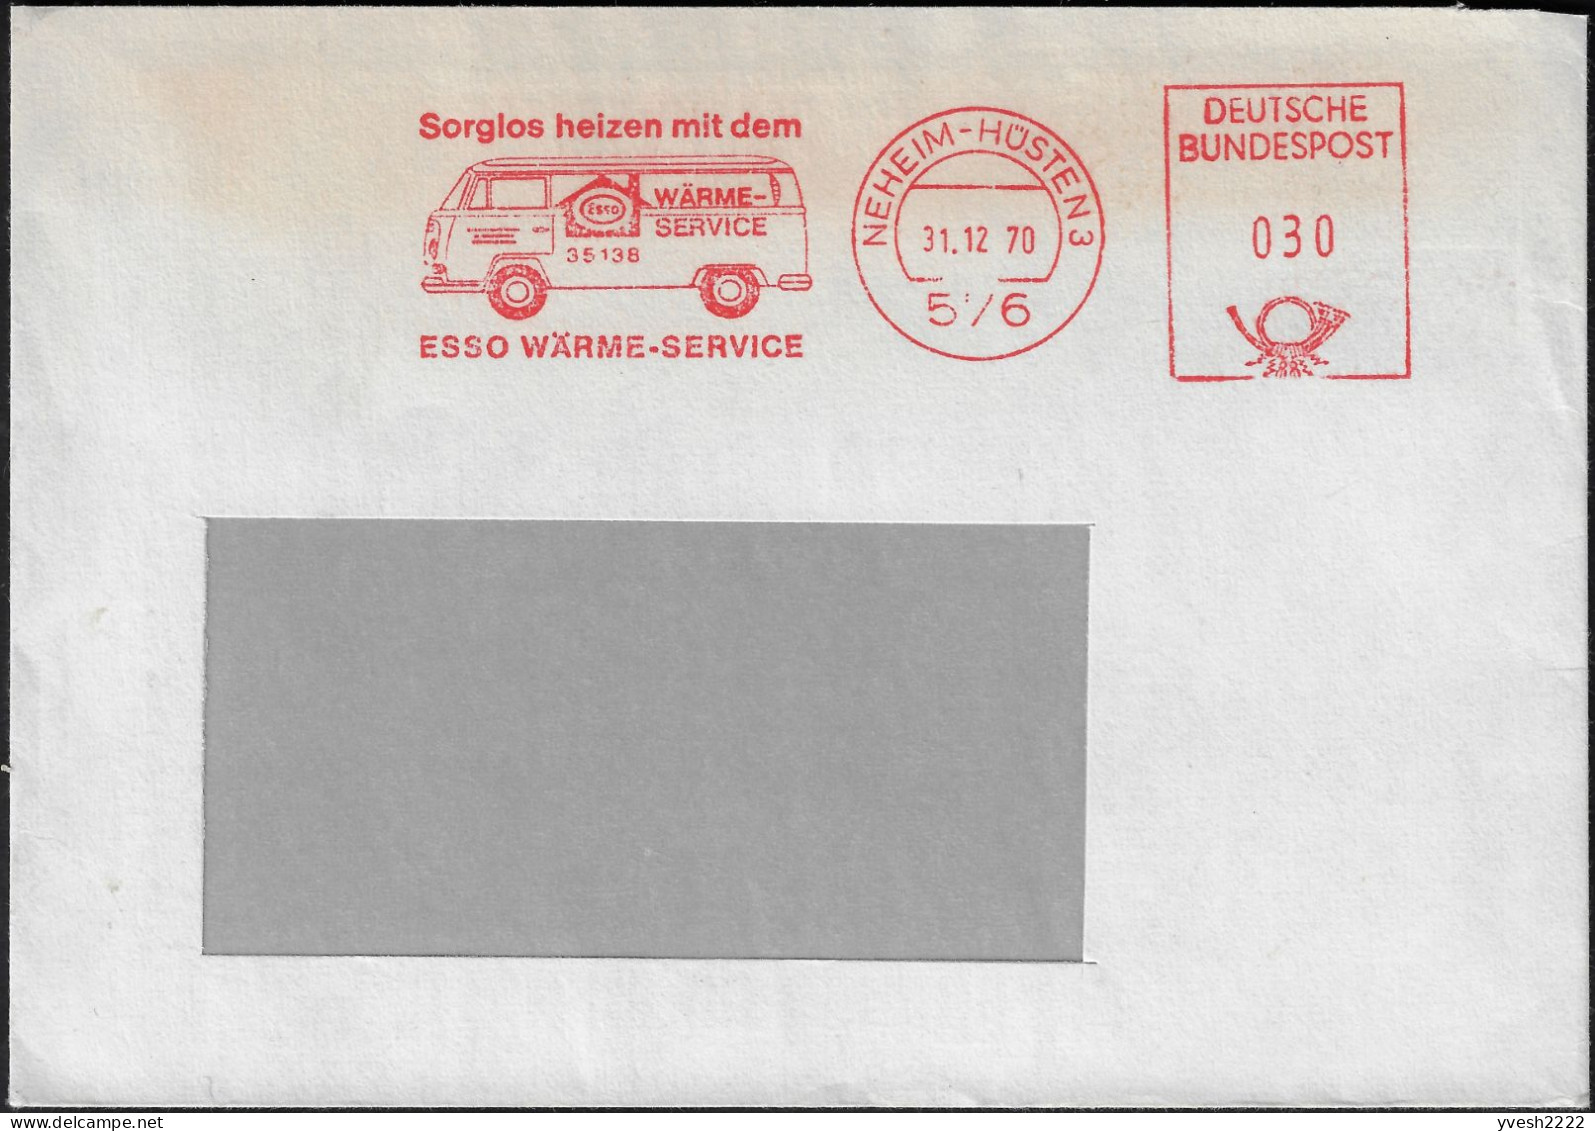 Allemagne 31.12.1970 EMA, Empreinte De Machine à Affranchir. Se Chauffer Sans Soucis Avec Le Service D'Esso. Combi VW - Pétrole